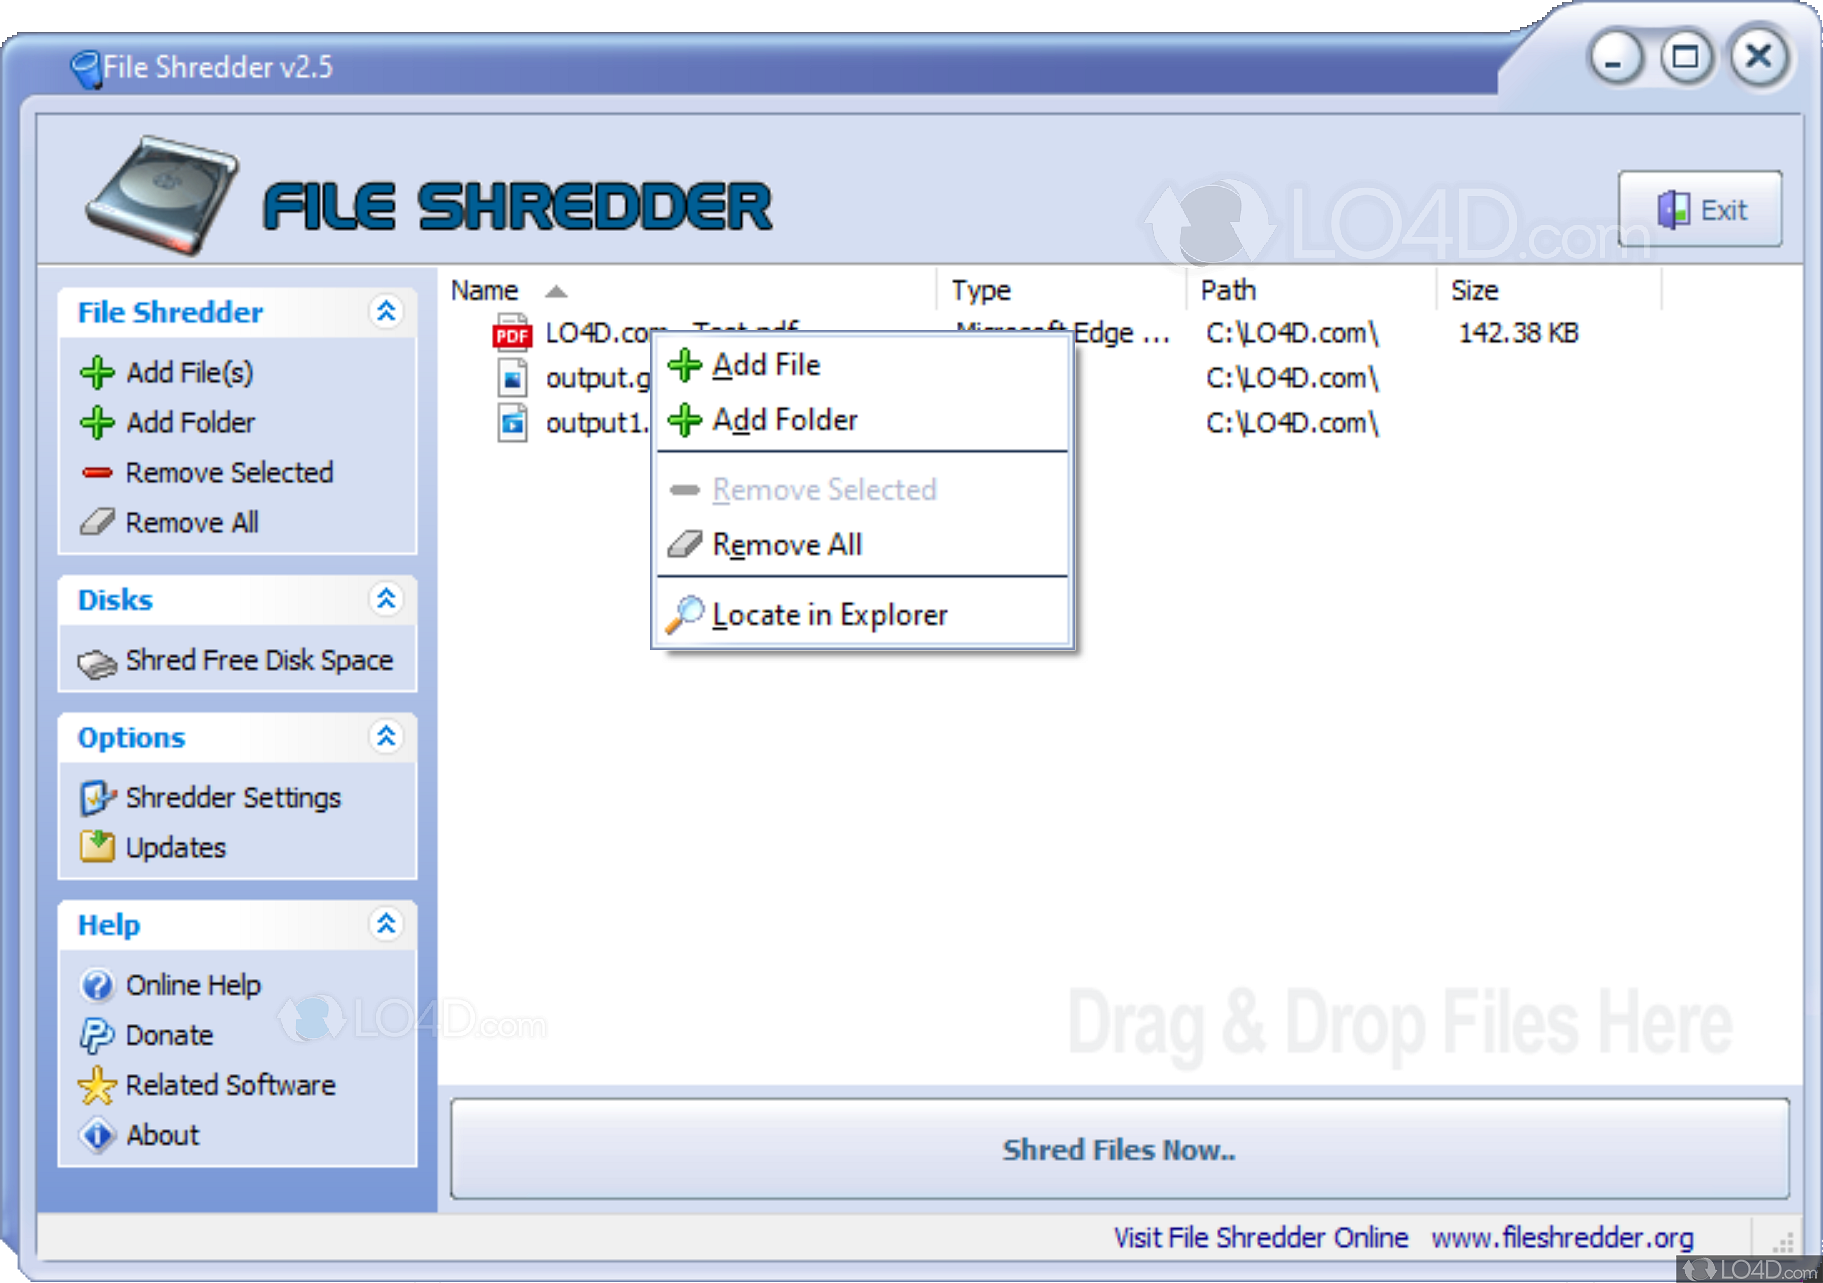 file shredder 2.50 windows 10